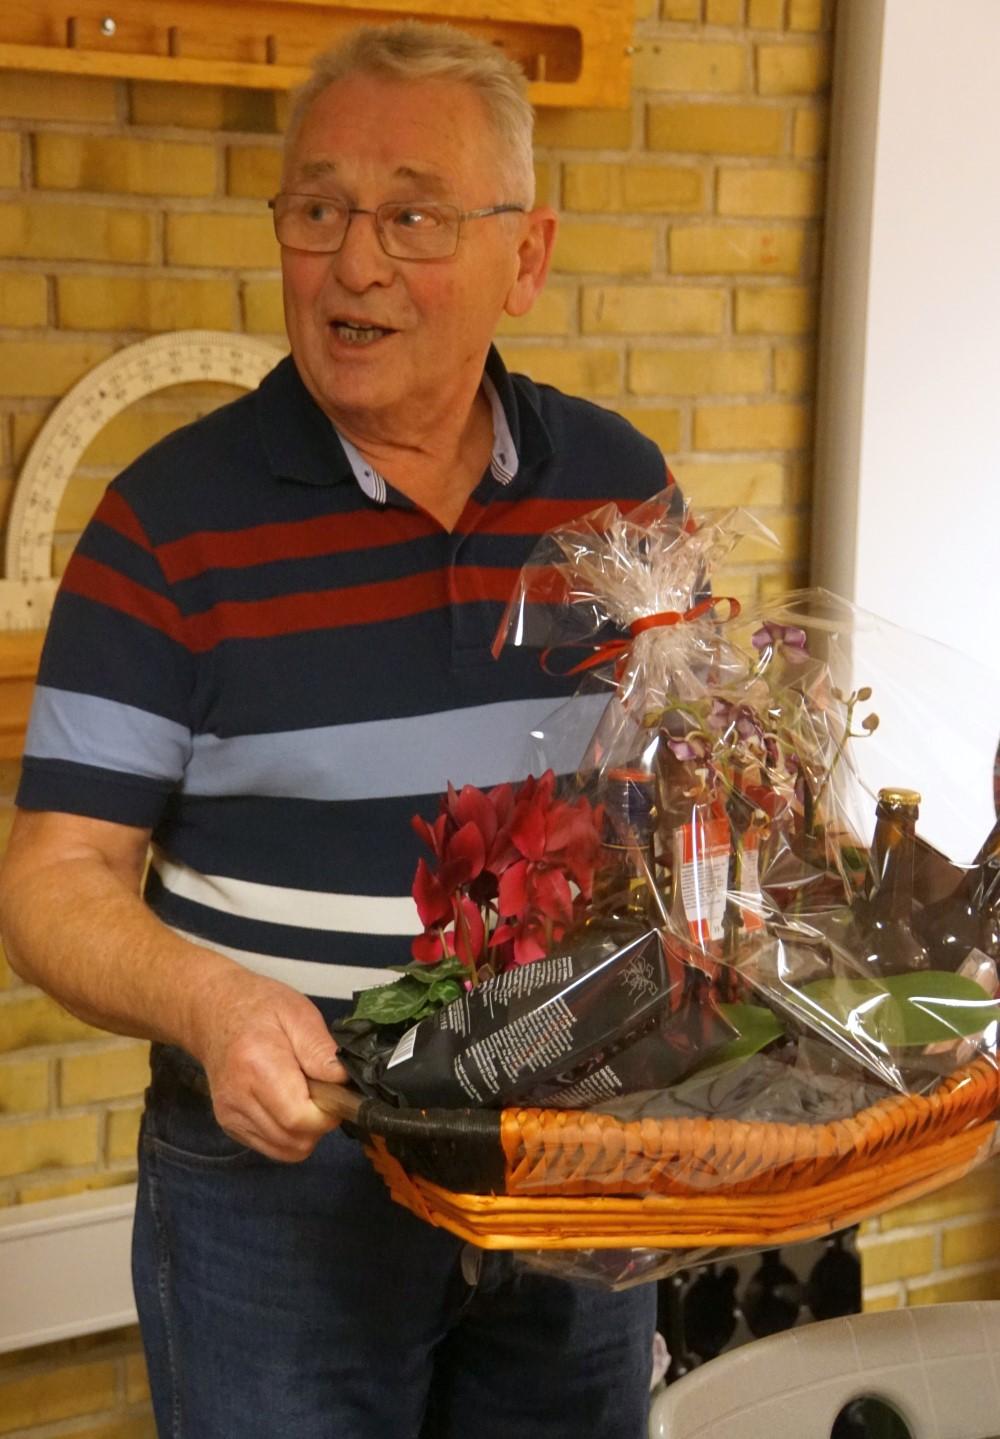 Et markant medlem af klubben har 40 års jubilæum. Peter Petersen kan i år fejre at han har været klubbens auktionarius i 40 år.